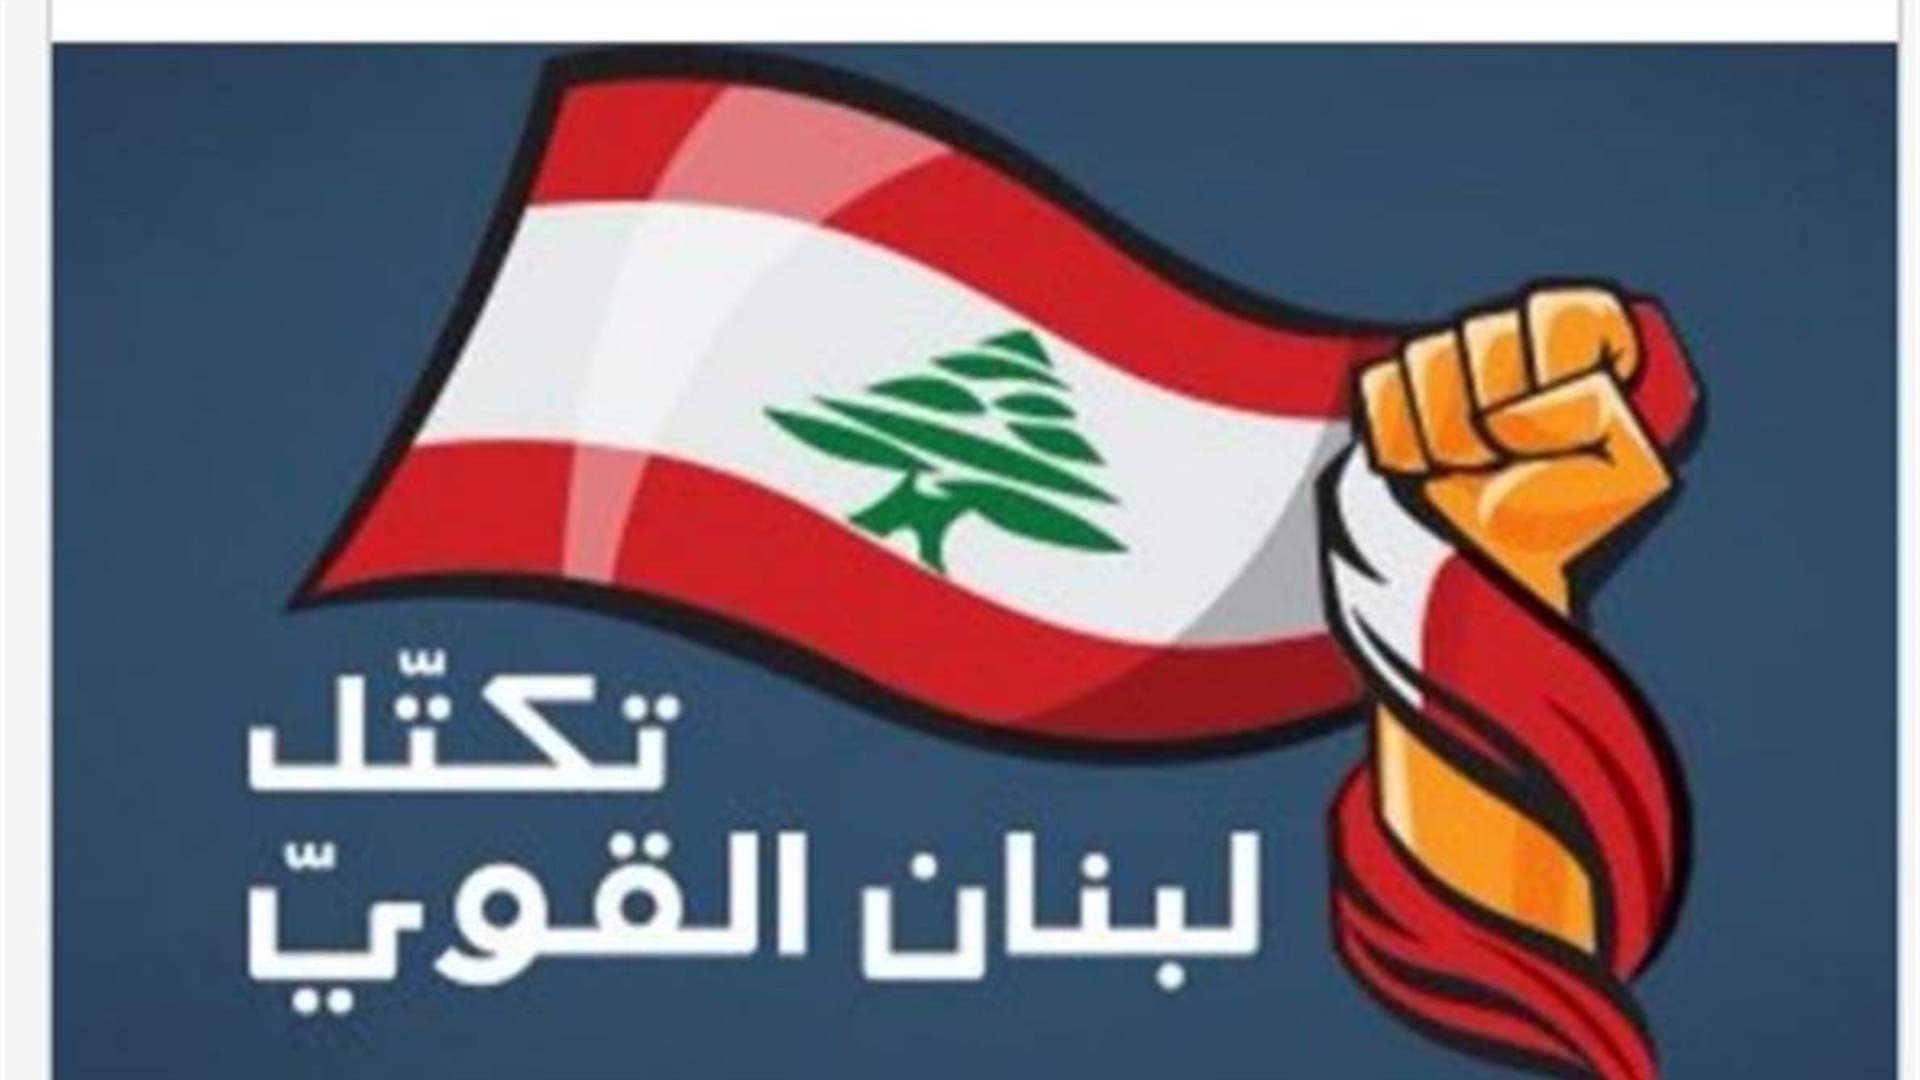 تكتل لبنان القويّ: اللحظة الخطيرة التي تمر بها بلادنا تستدعي تجاوز الخلافات